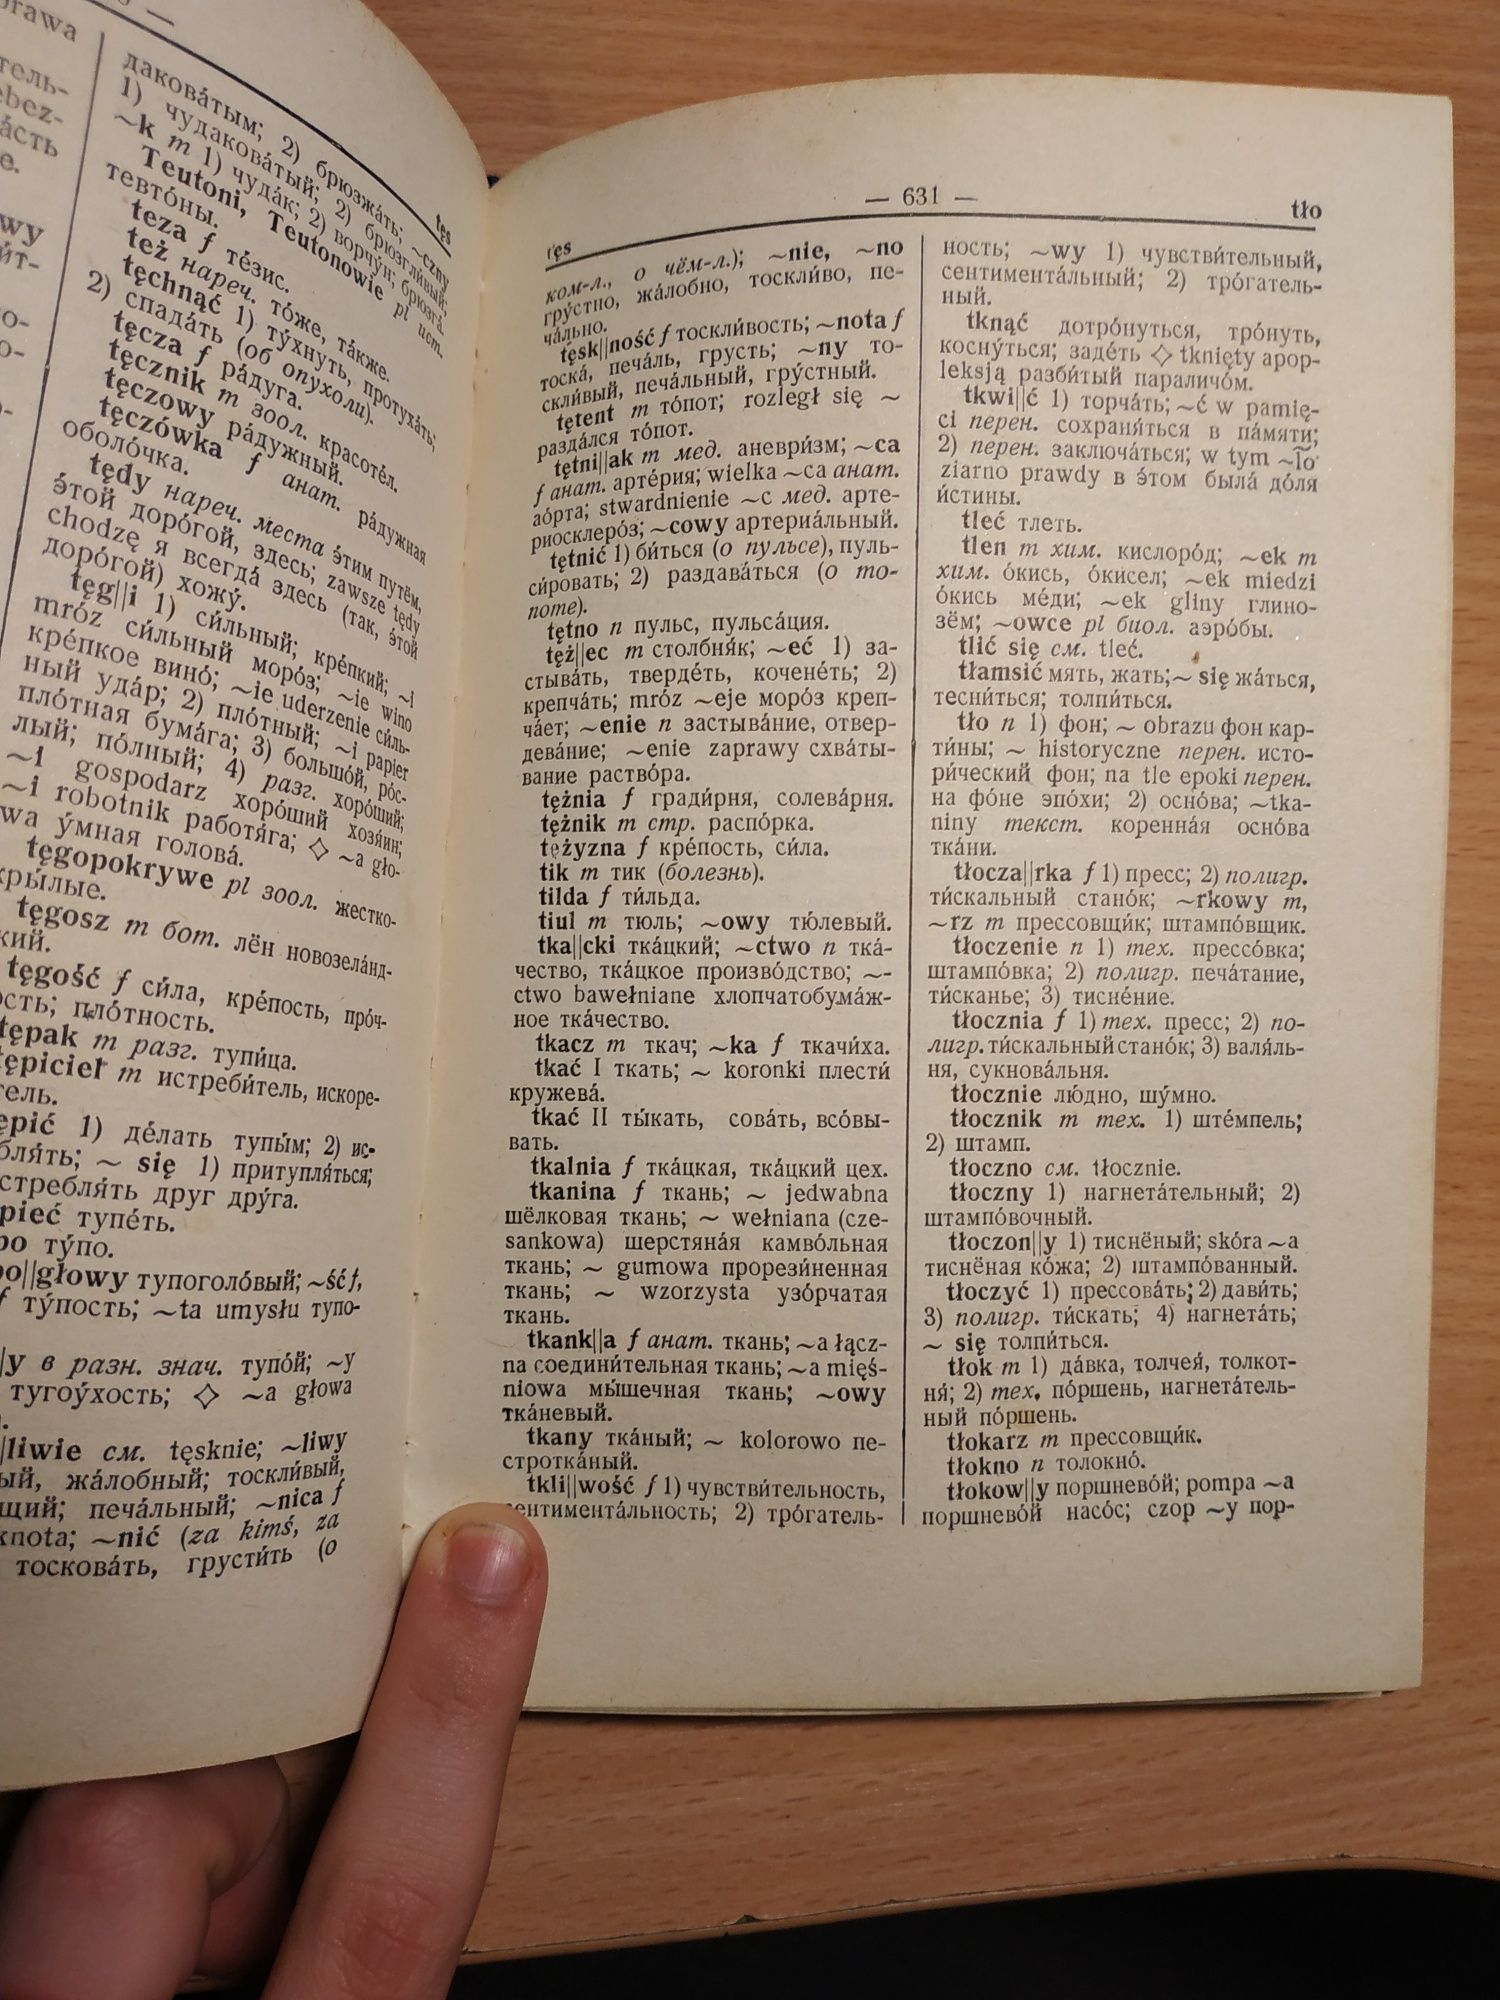 Польско-русский словарь 1963 на 50000 слов Розвадовская